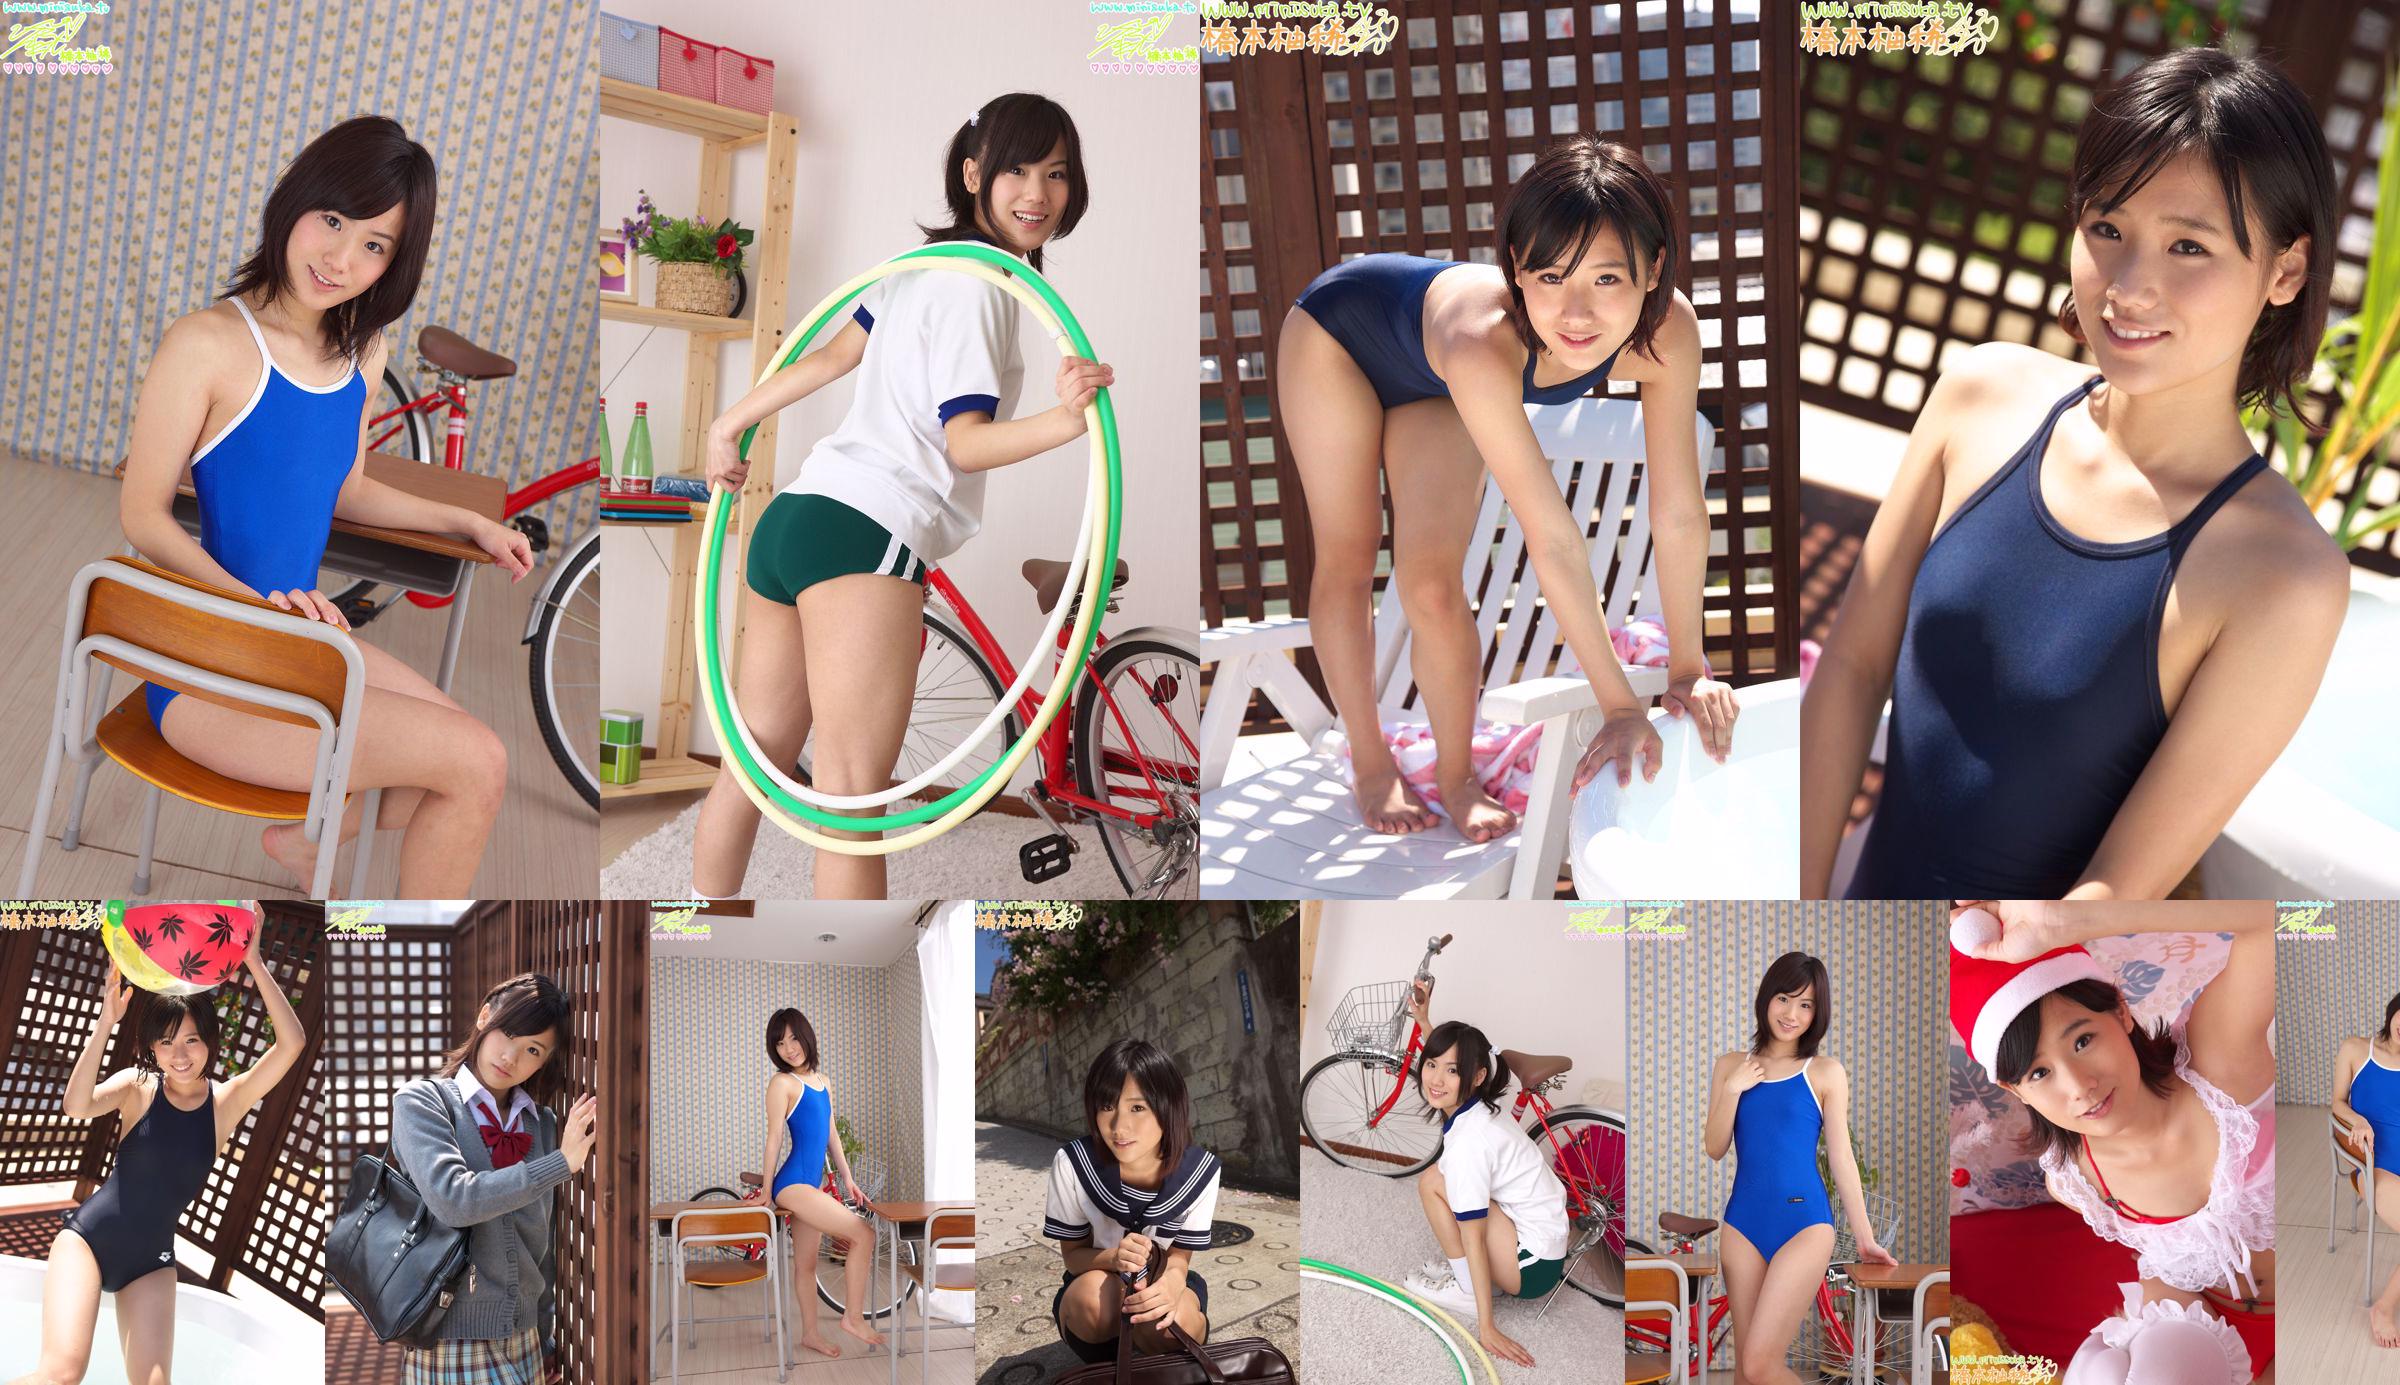 [Minisuka] Yuzuki Hashimoto - Galeria regular STAGE1 01 No.e9ace3 Página 1